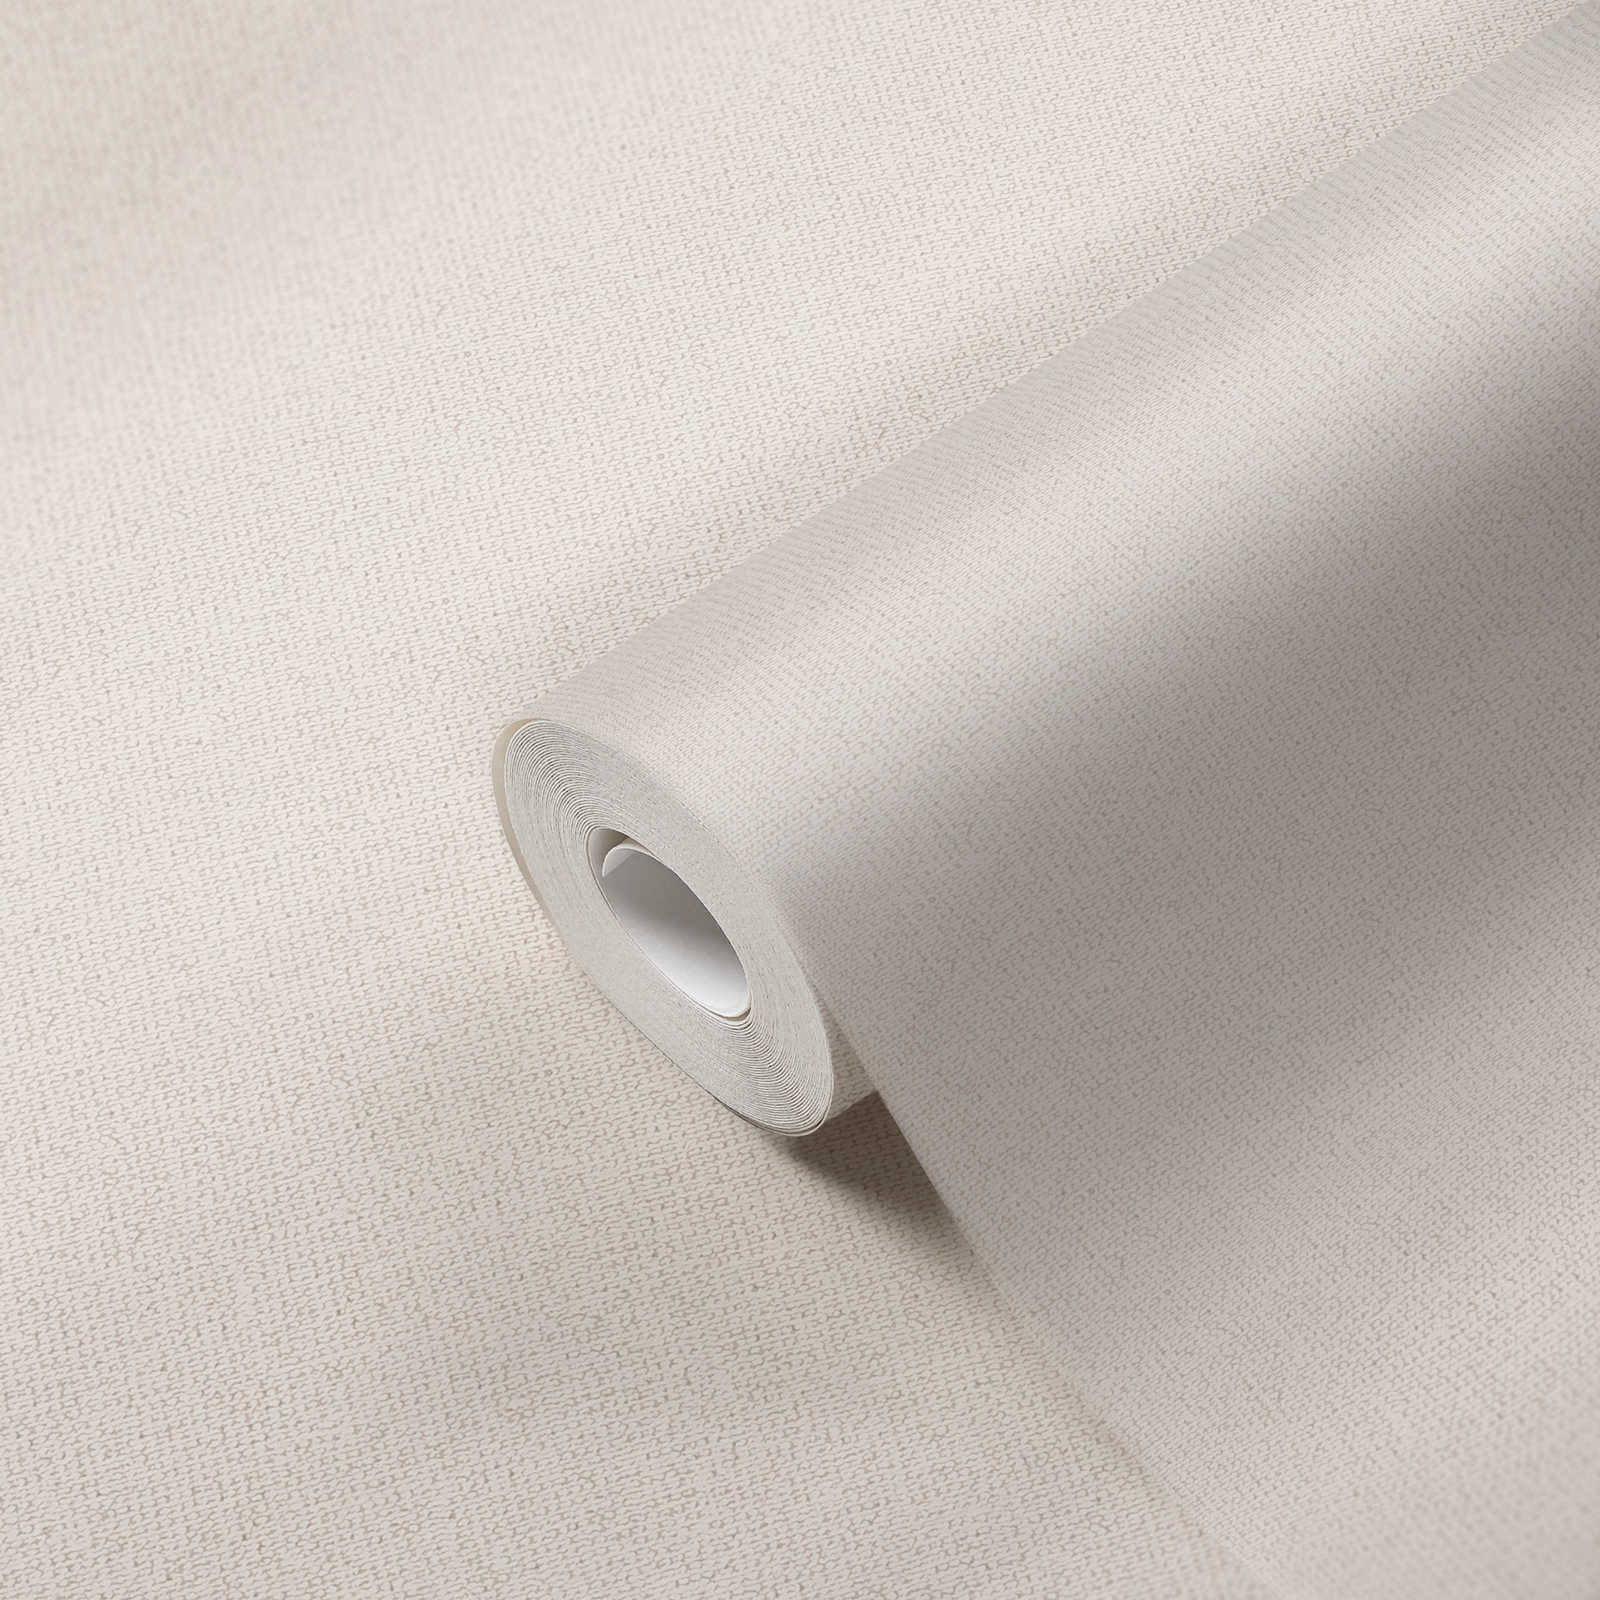             Papel pintado no tejido mate con estructura de aspecto de lino - blanco, crema
        